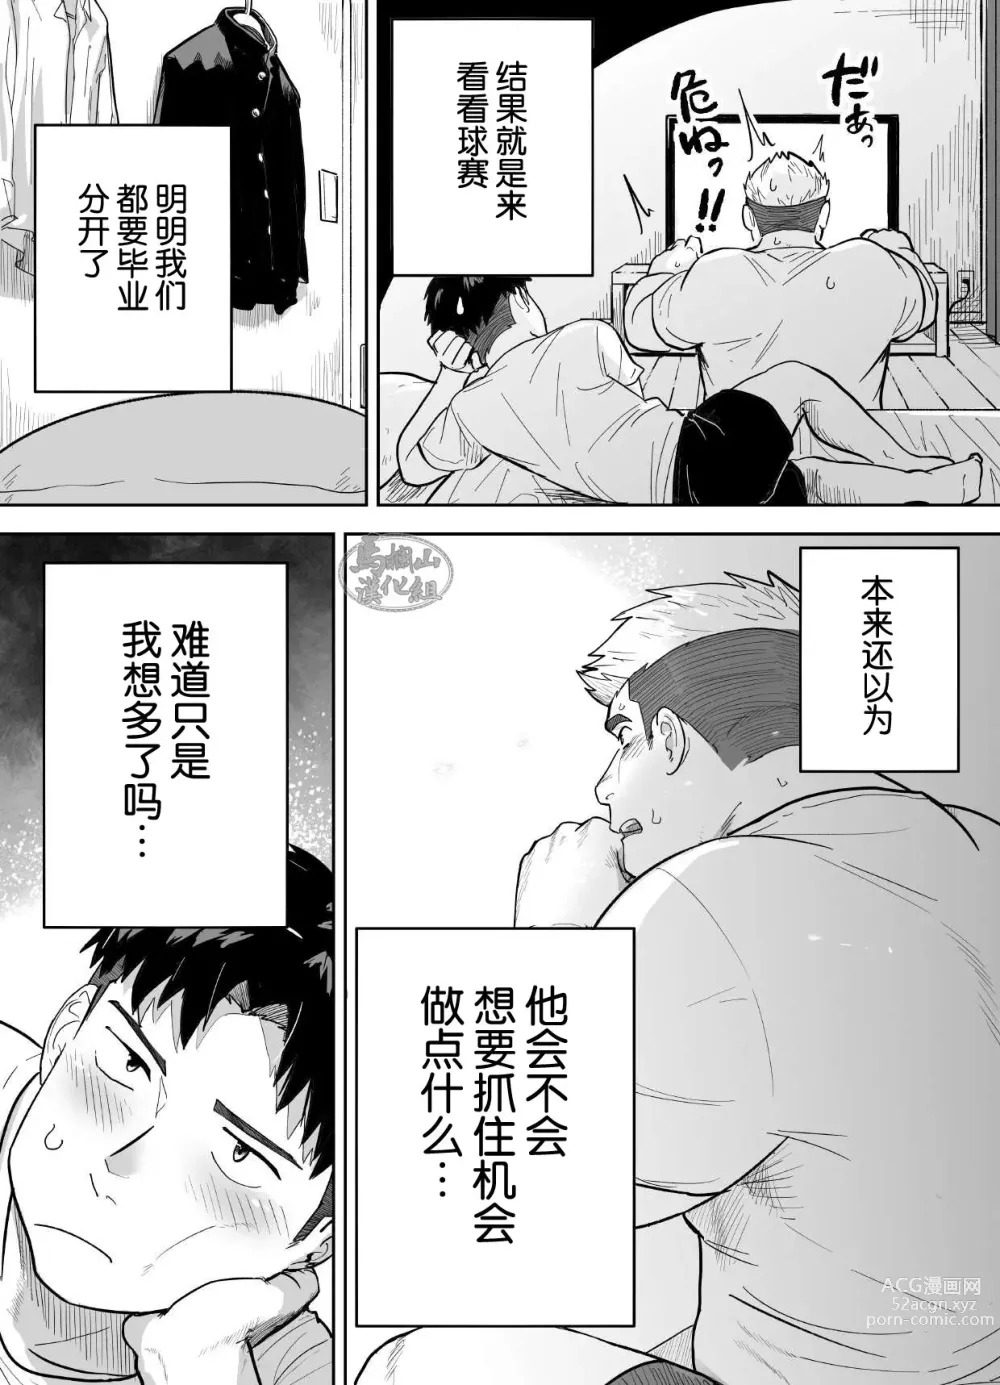 Page 4 of manga 片思いしてるガチムチ同級生に襲われる話